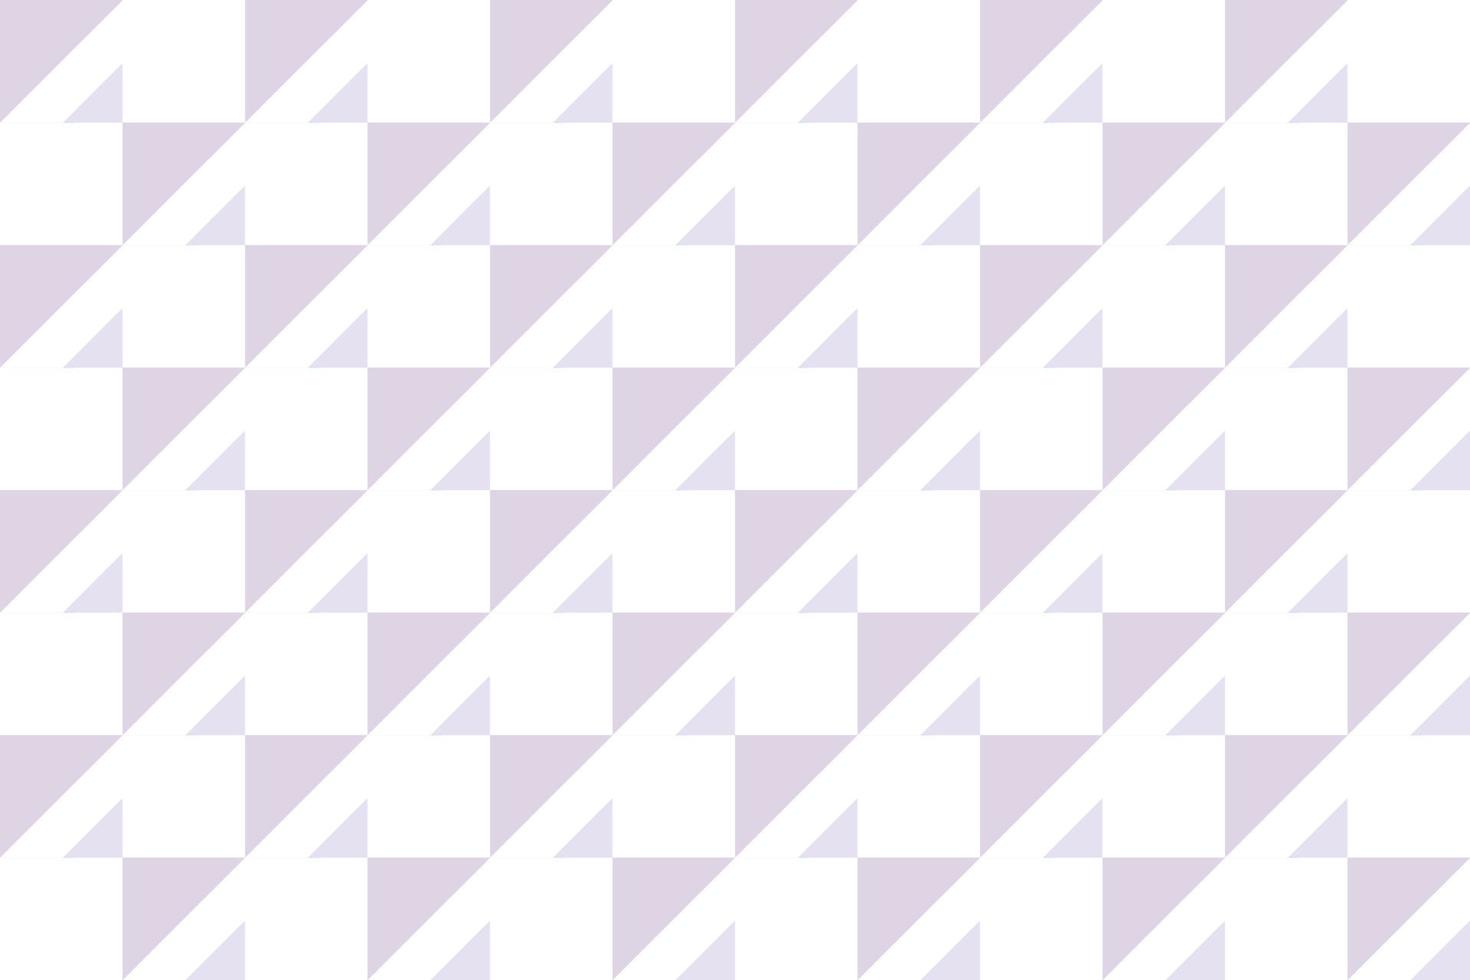 Los vectores de ilustraciones de patrones de cuadros son un patrón de rayas modificadas que consisten en líneas horizontales y verticales cruzadas que forman cuadrados.